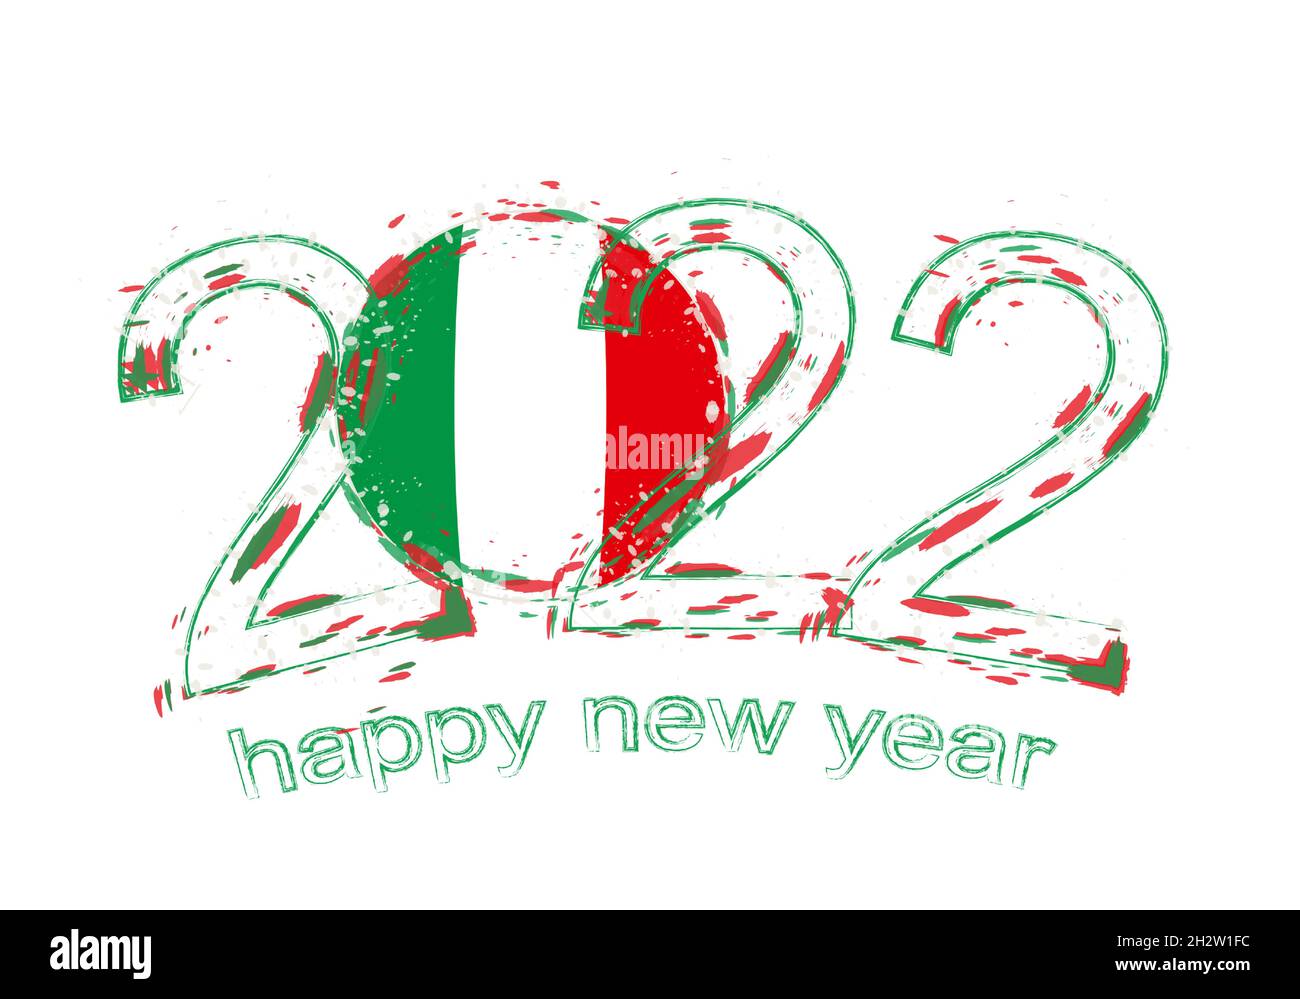 Bonne année 2022 italie Banque d'images détourées - Alamy